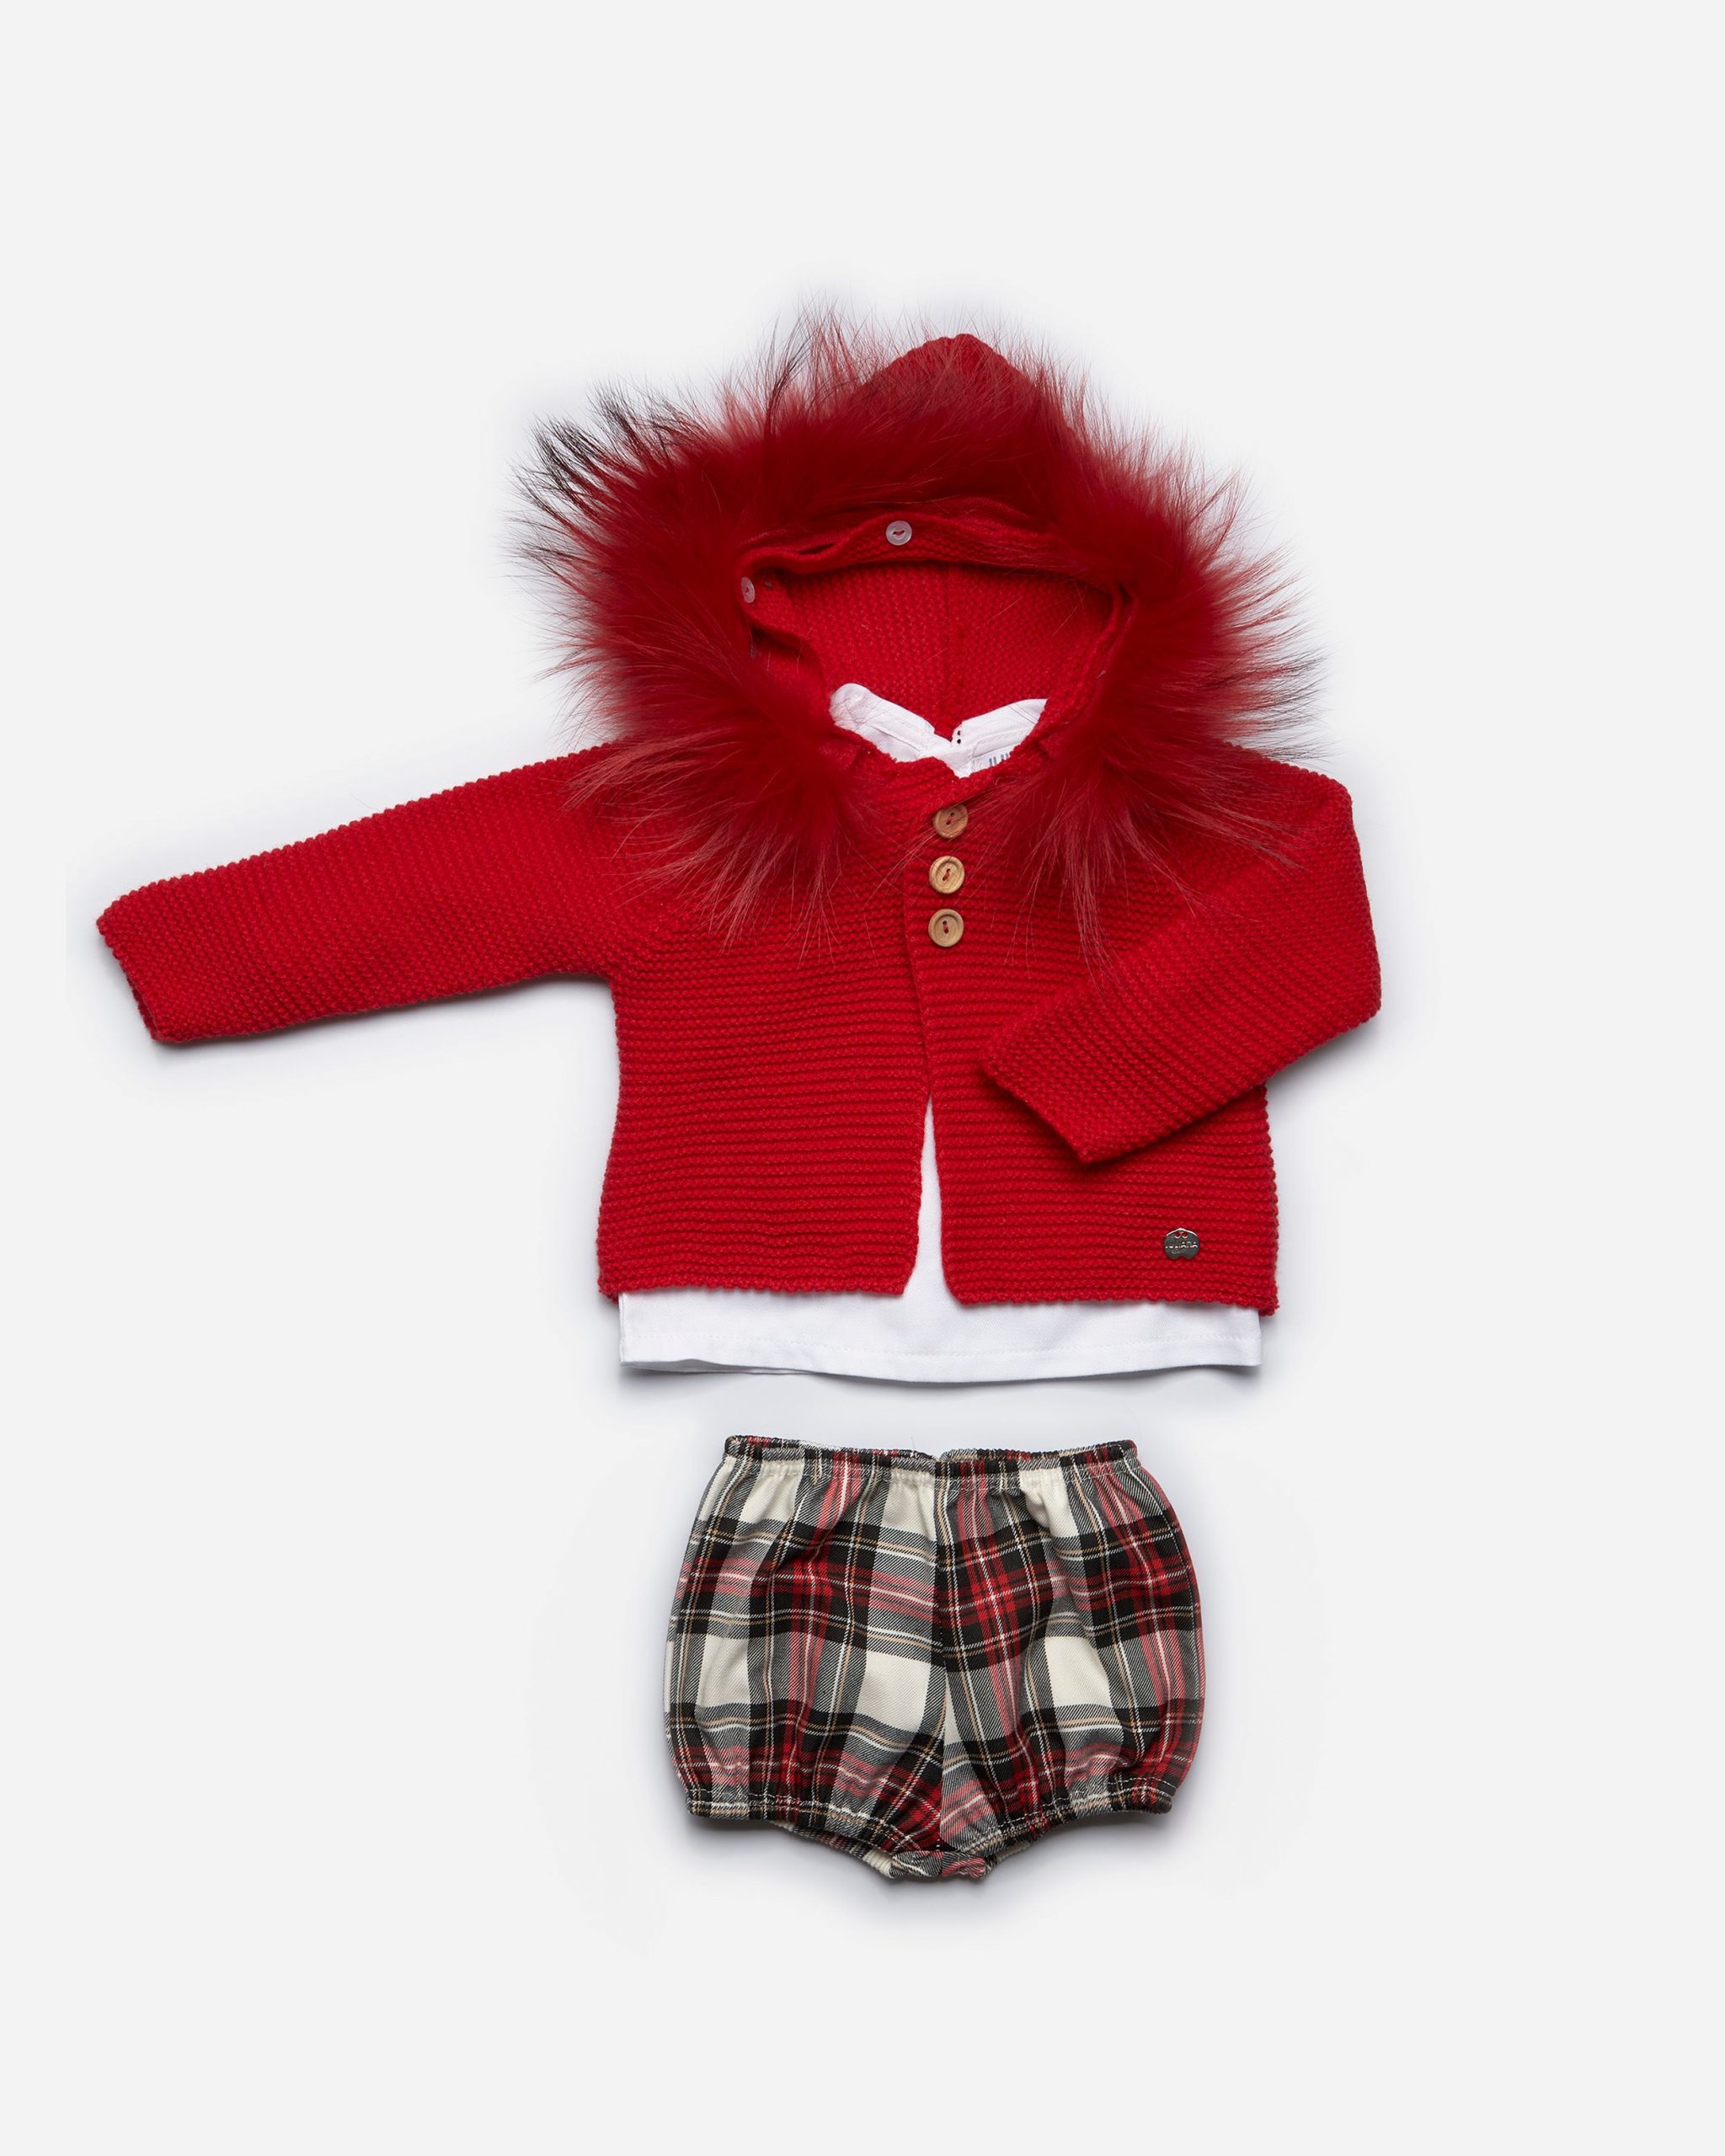 Conjunto tres piezas, chaqueta pelo rojo, camisa manga larga y culetin escoces